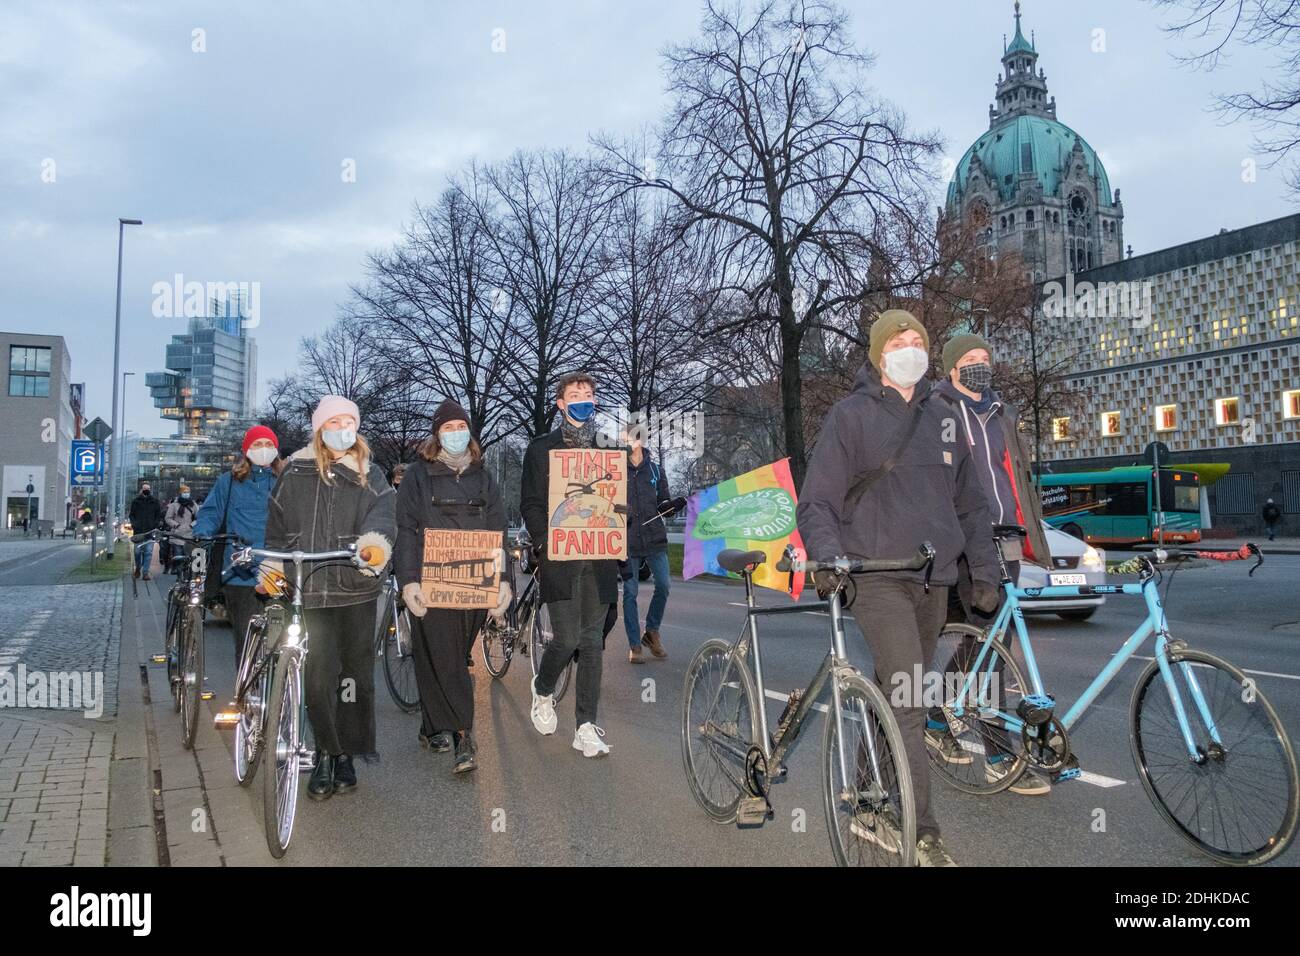 11 décembre 2020, Basse-Saxe, Hanovre: Les activistes du mouvement climatique "vendredi pour l'avenir" manifestent à l'occasion de la journée mondiale des grèves avec une "promenade de la honte" dans le centre-ville. Photo : OLE Spata/dpa Banque D'Images